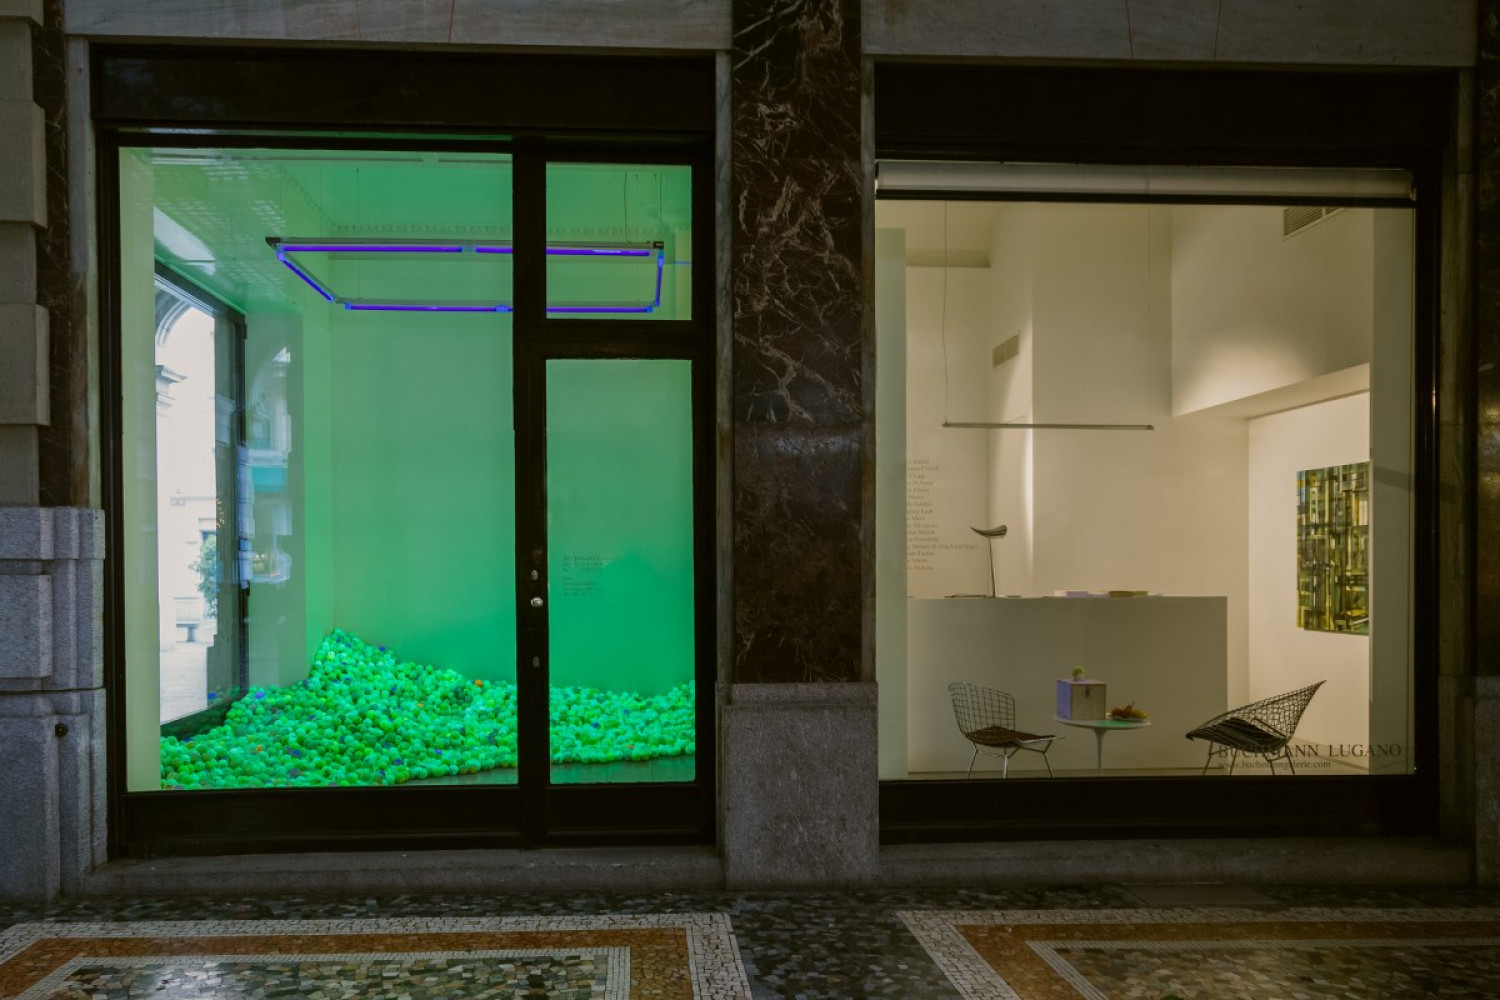 Alex Dorici, ‘Pointillism Garden Balls #2’, Installation view, Buchmann Lugano, 2015